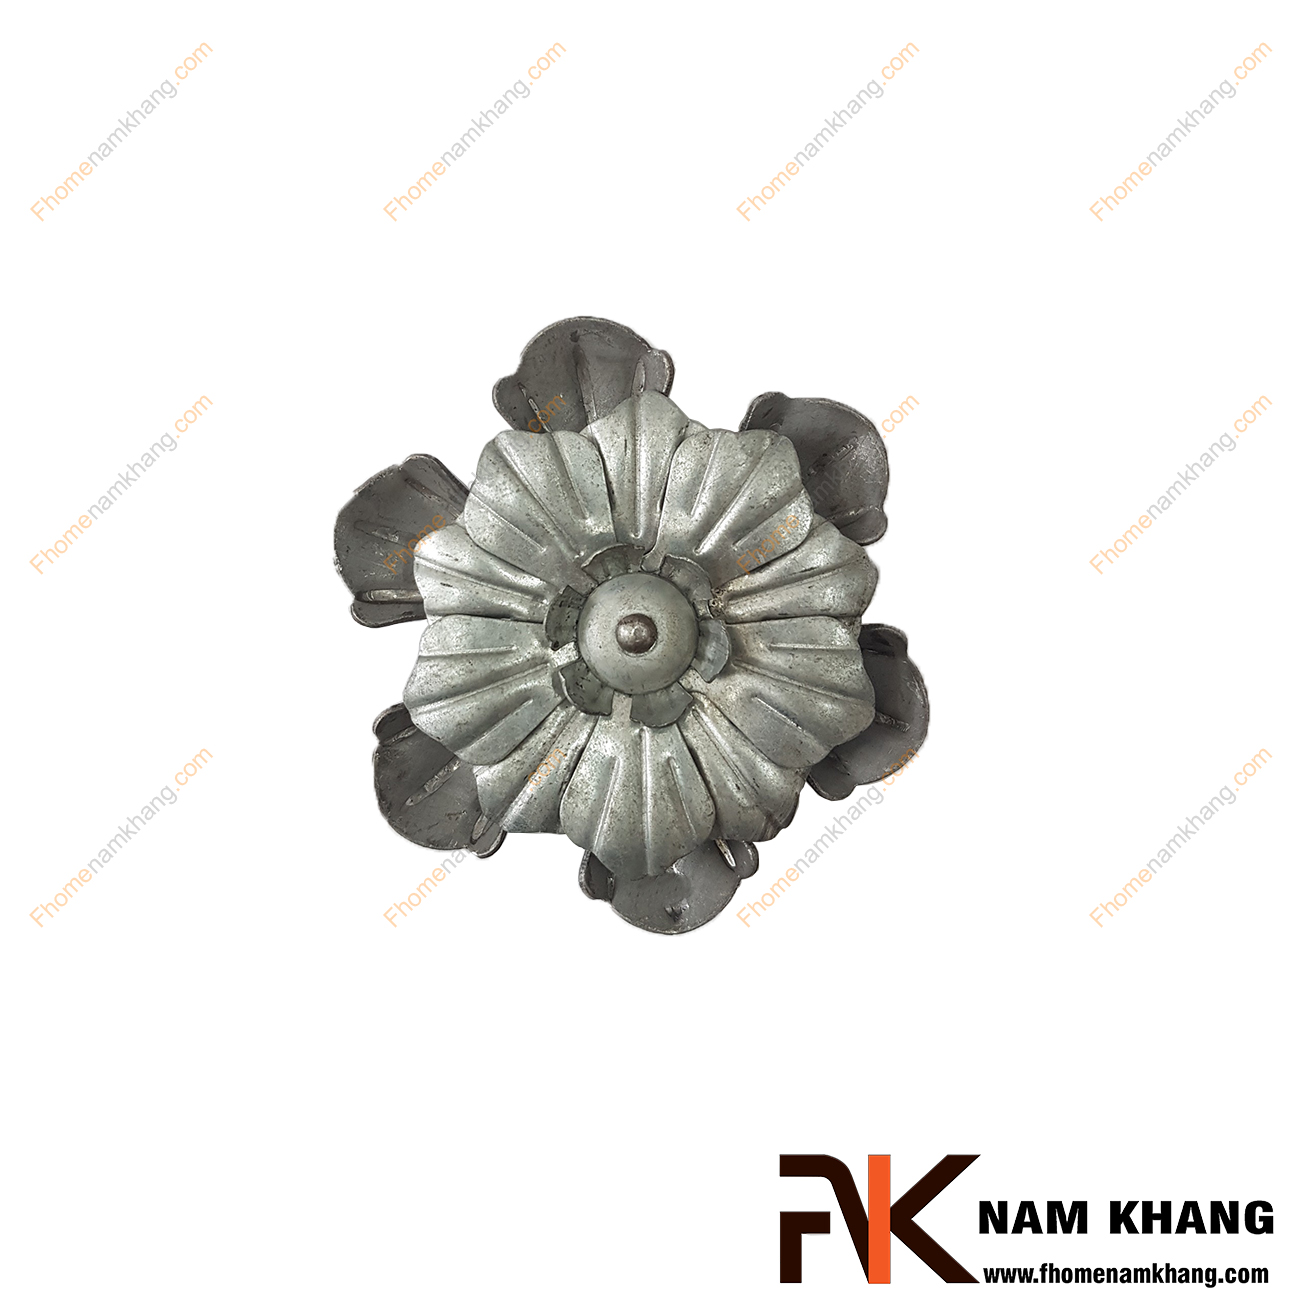 Hoa lá thép dập NKS-122 được tạo hình bông hoa, là phụ kiện trang trí dành cho các sản phẩm sắt uốn mỹ thuật   Chi tiết được dập nỗi trên bề mặt, mô phỏng chính xác chi tiết thực tế.